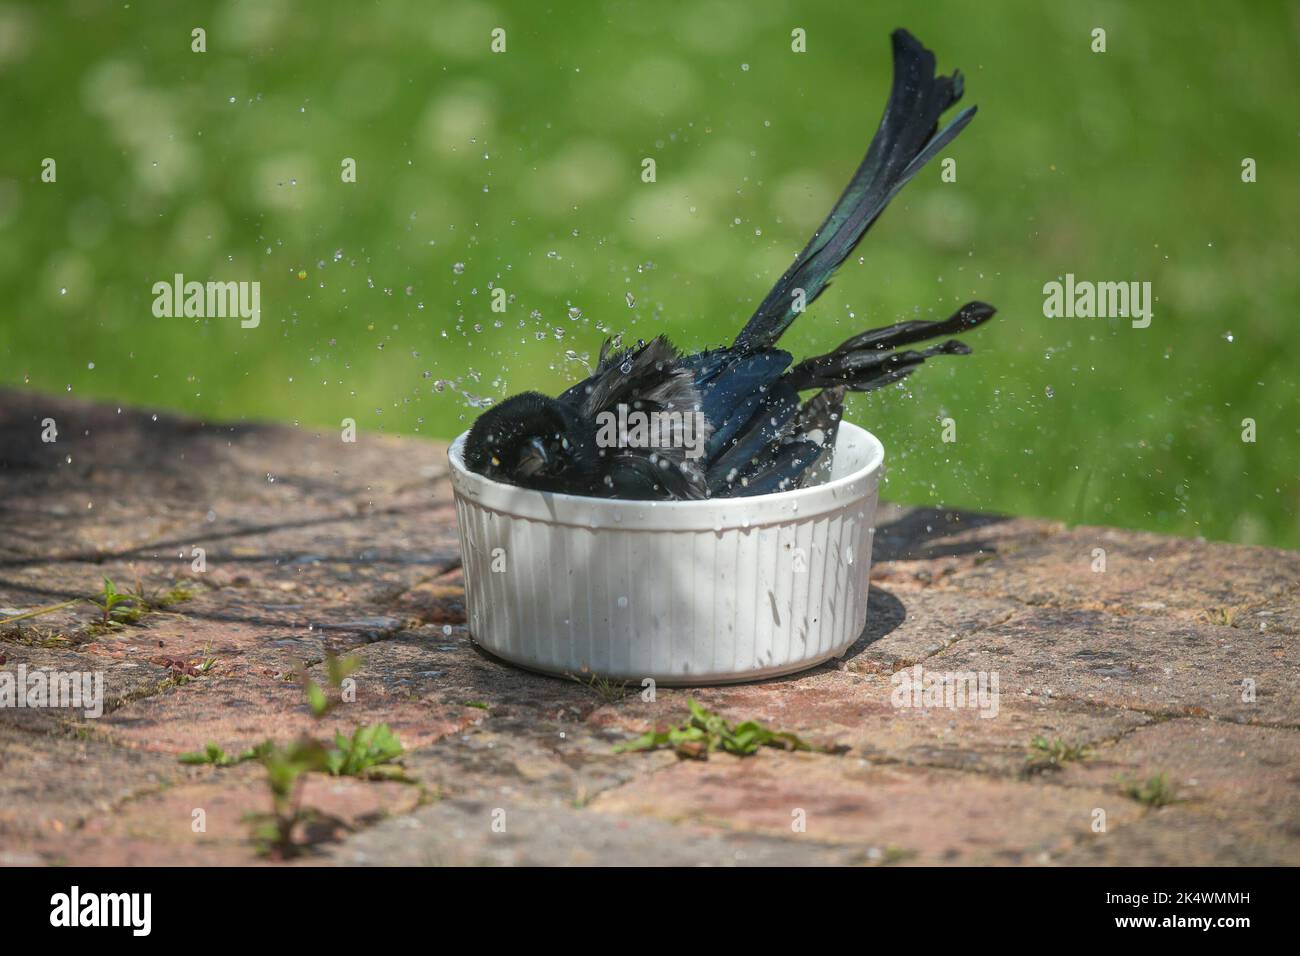 Primer plano de un salvaje pájaro urracha euroasiática del Reino Unido (Pica pica) bañándose aislado en un pequeño recipiente de agua en un patio de jardín. Foto de stock